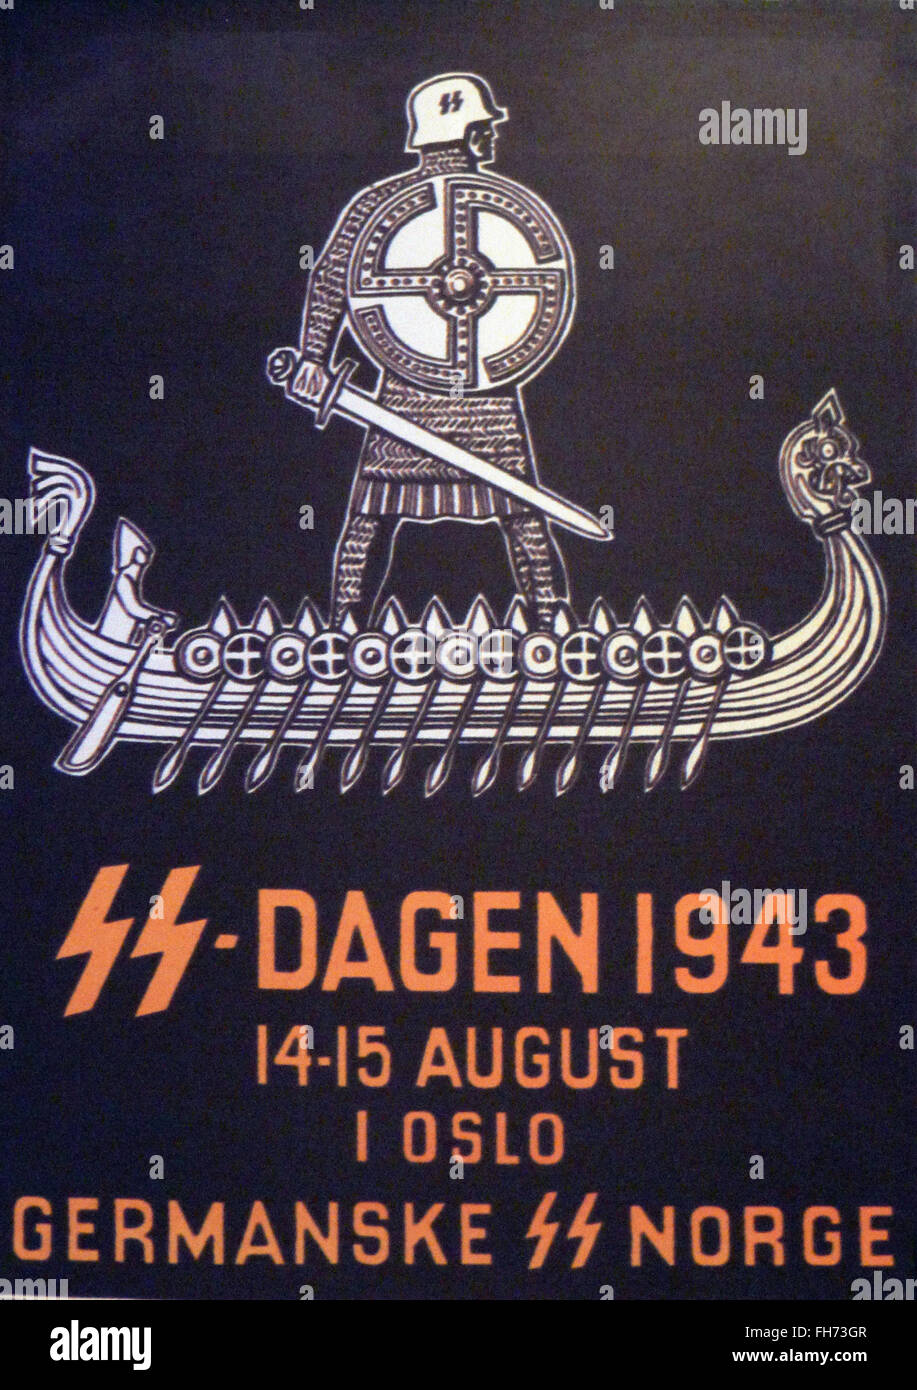 Germanske SS Norge - deutsche Nazi-Propaganda-Plakat - WWII Stockfoto